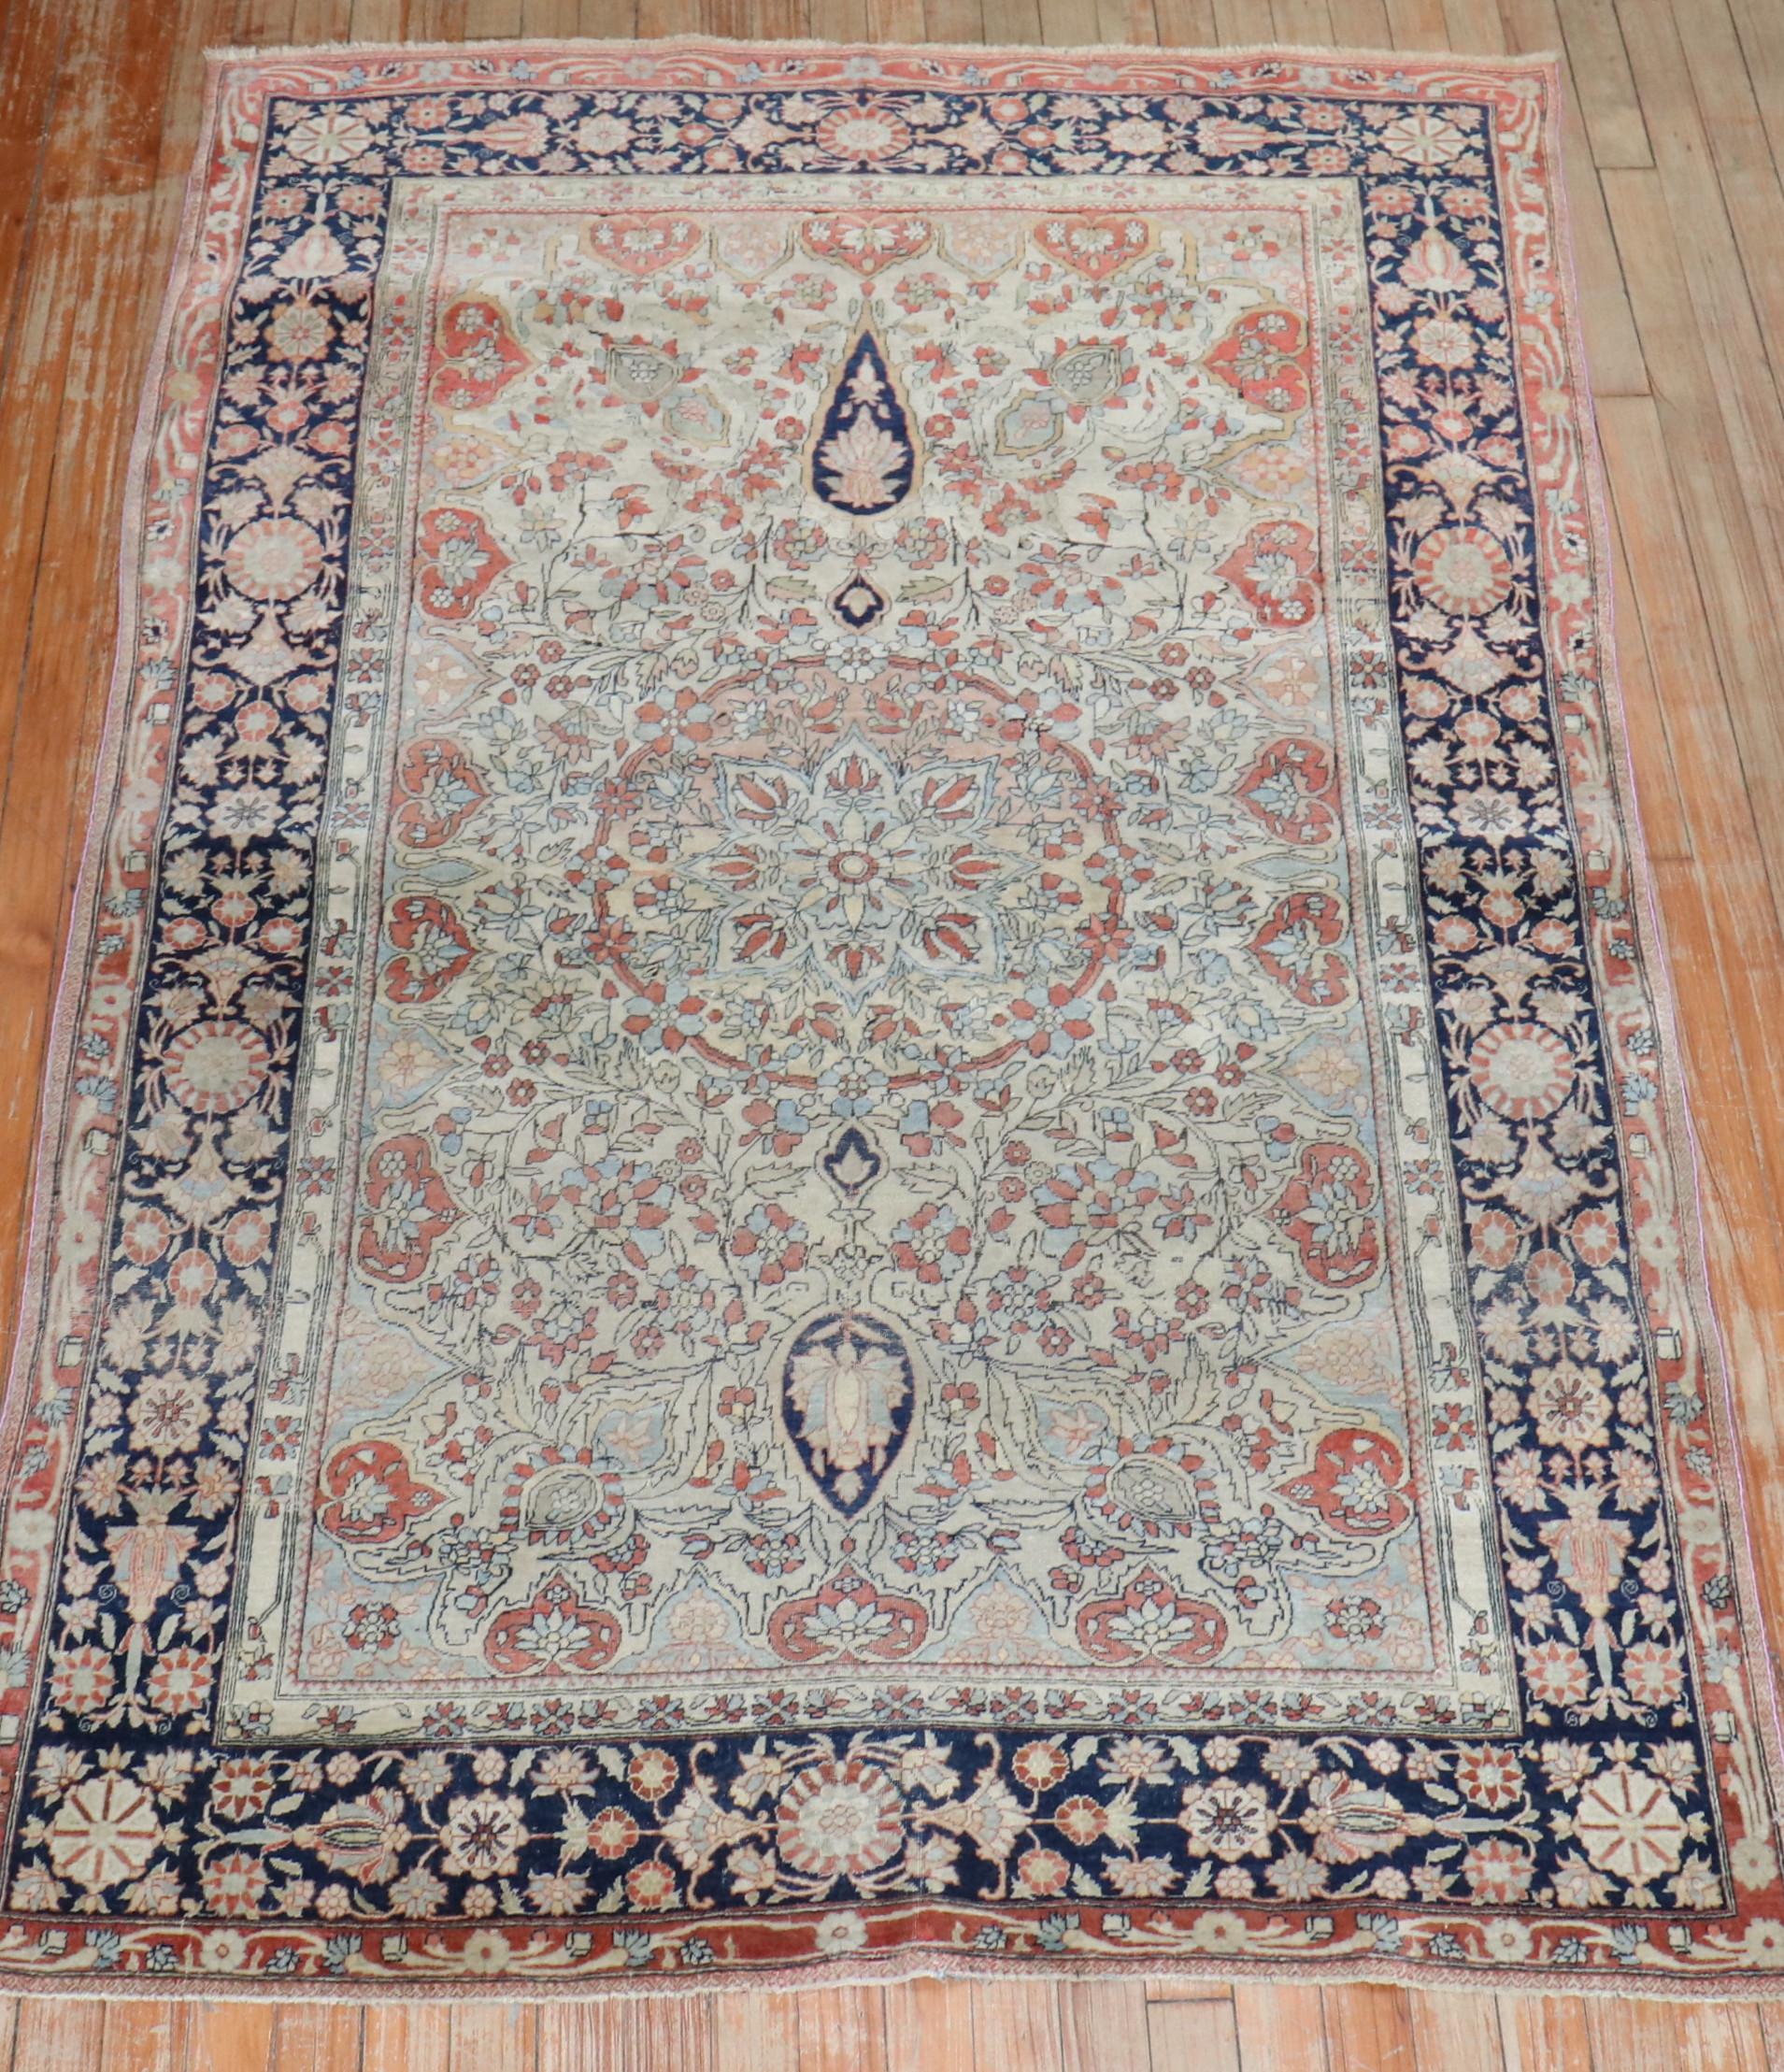 Fin du 19e siècle  Tapis Mohtasham Kashan

4'3'' x 6'6''

Le groupe le plus rare de tapis de Kashan qui utilise des designs et des palettes de couleurs non traditionnels est le 